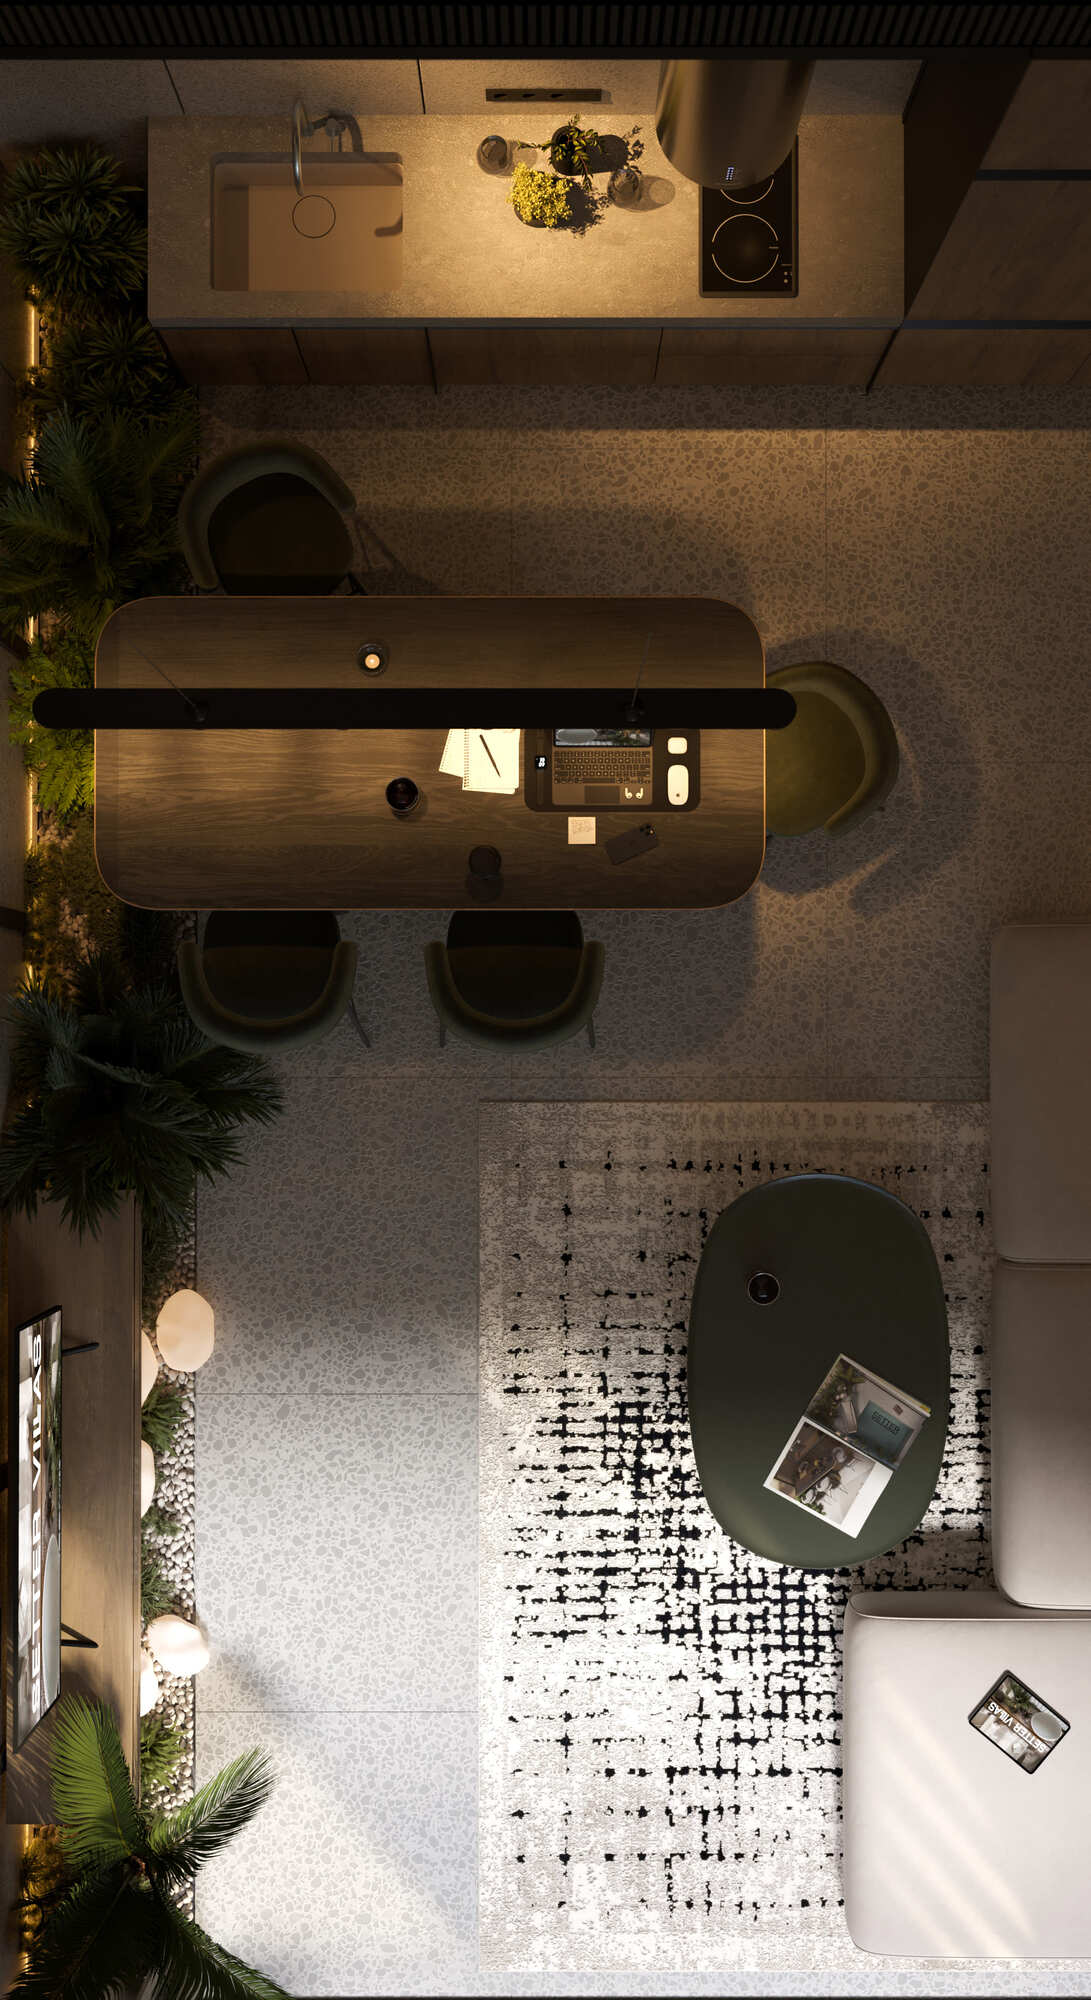 Дизайн интерьера квартиры в современном стиле | Intuition Design